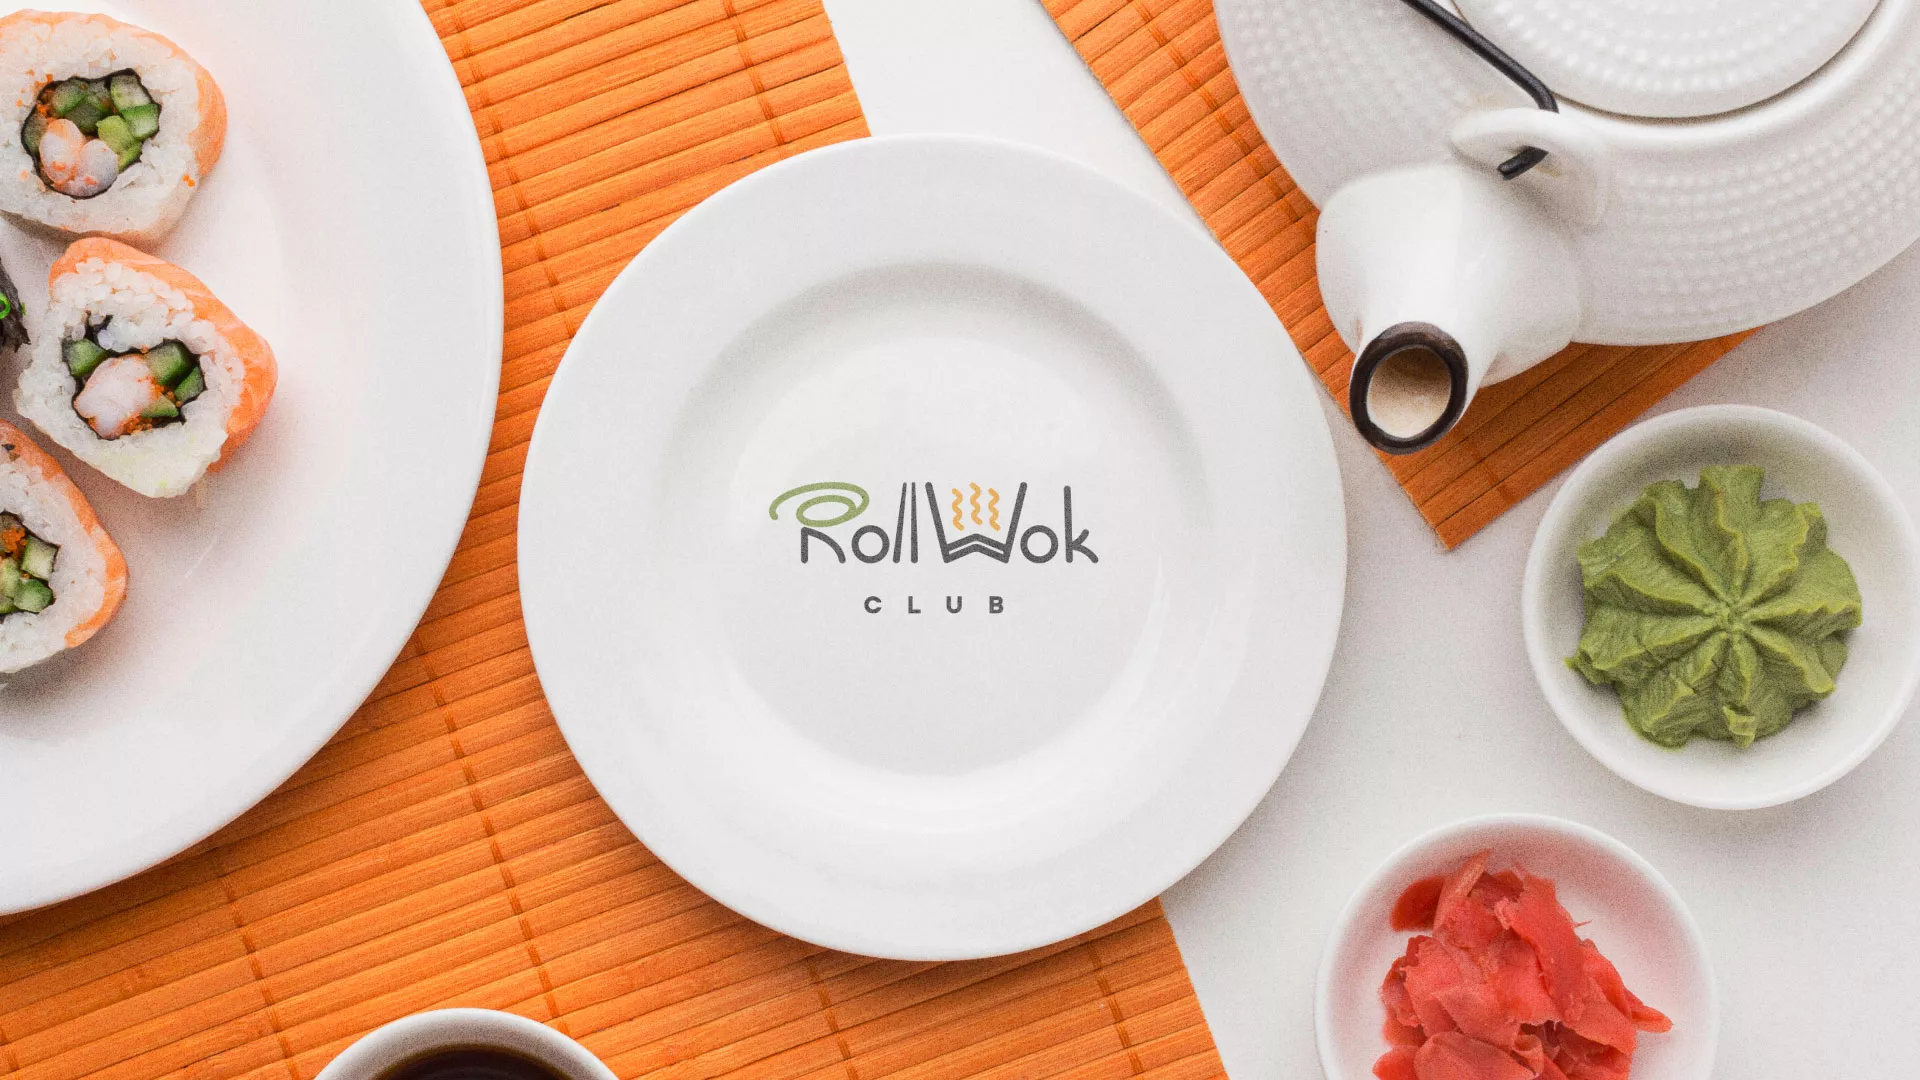 Разработка логотипа и фирменного стиля суши-бара «Roll Wok Club» в Челябинске